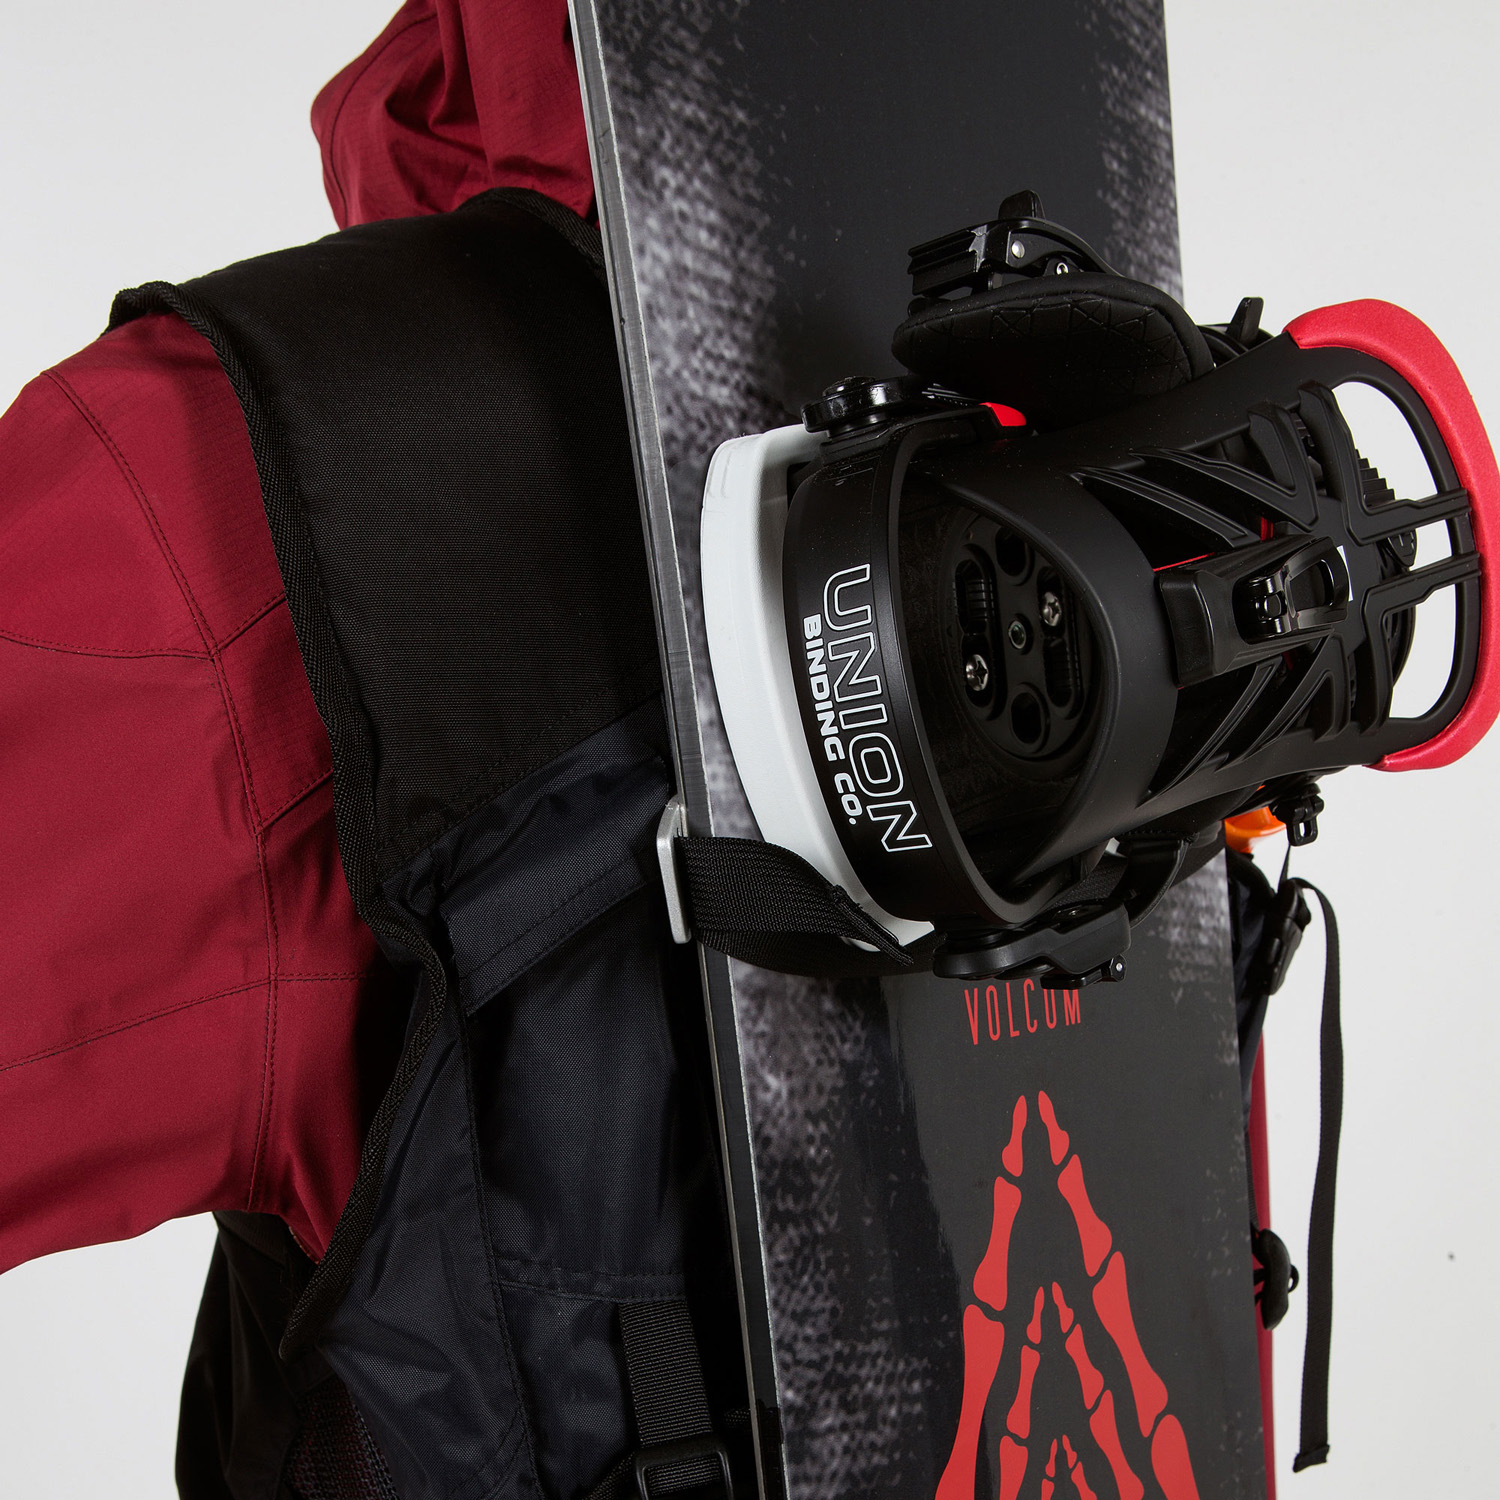 无需背包即可使用滑雪板带轻松远足